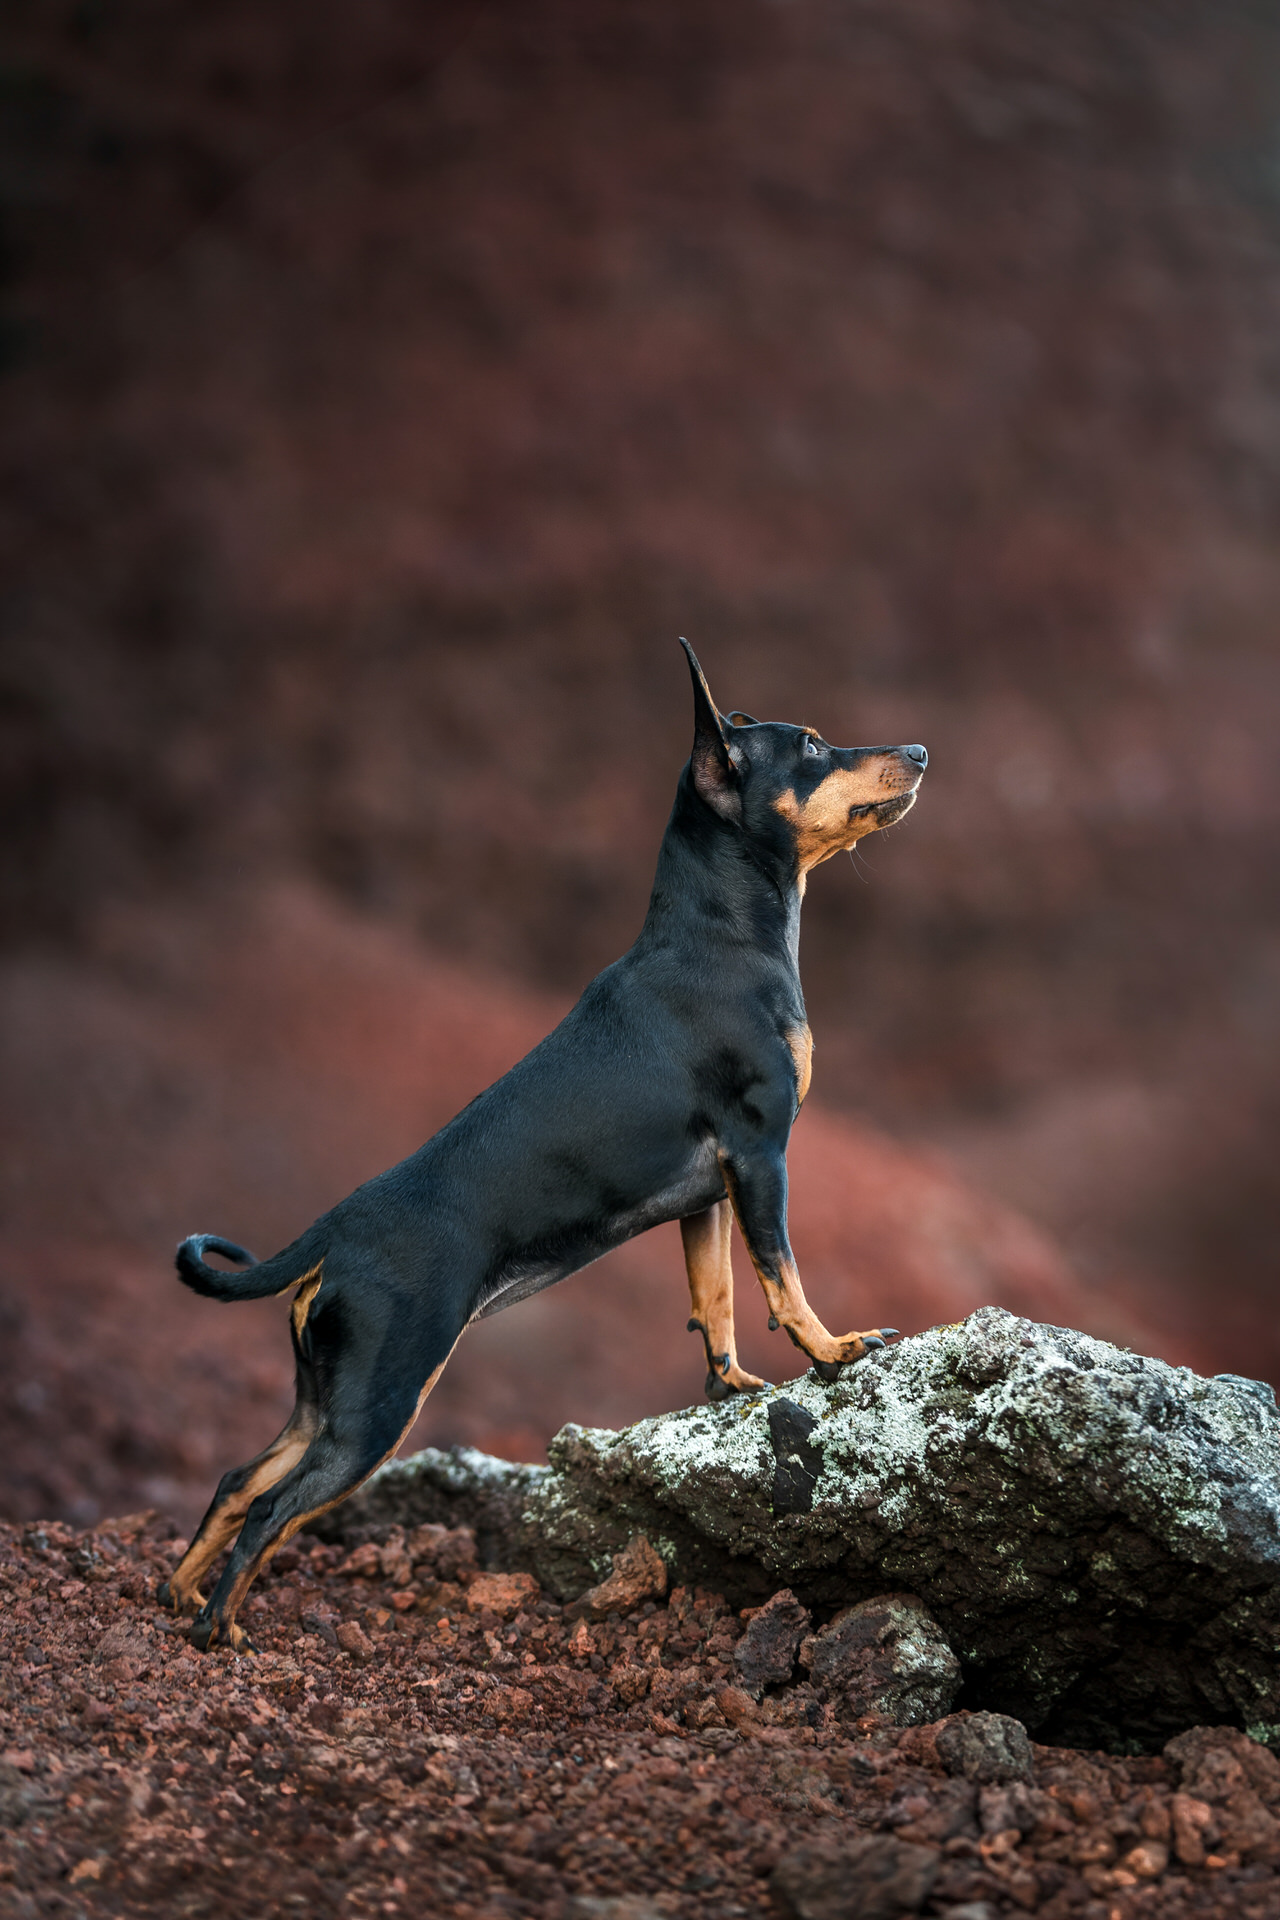 Miniature Pinscher standing on rock outdoors